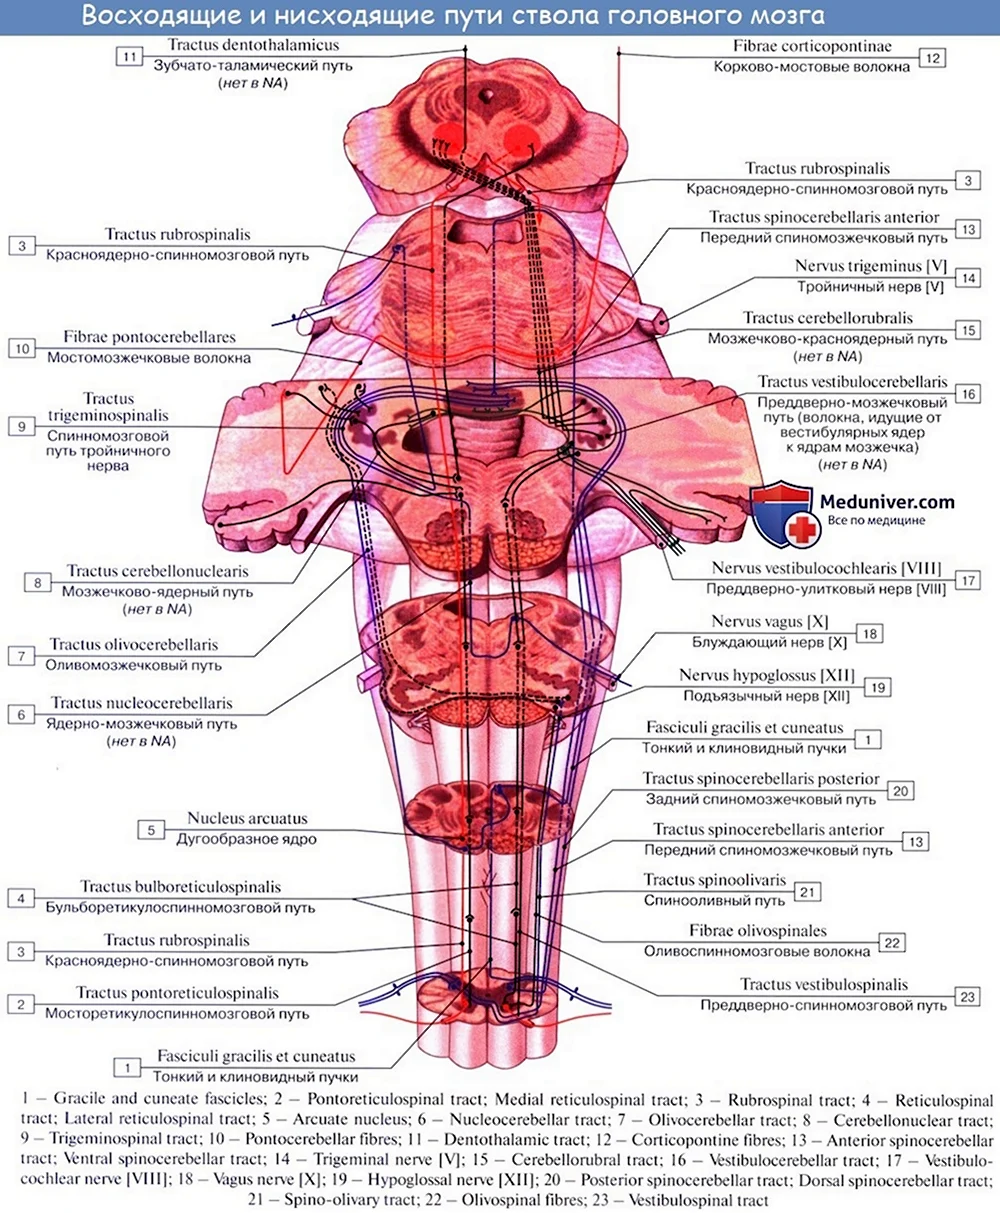 Ствол головного мозга анатомия латынь